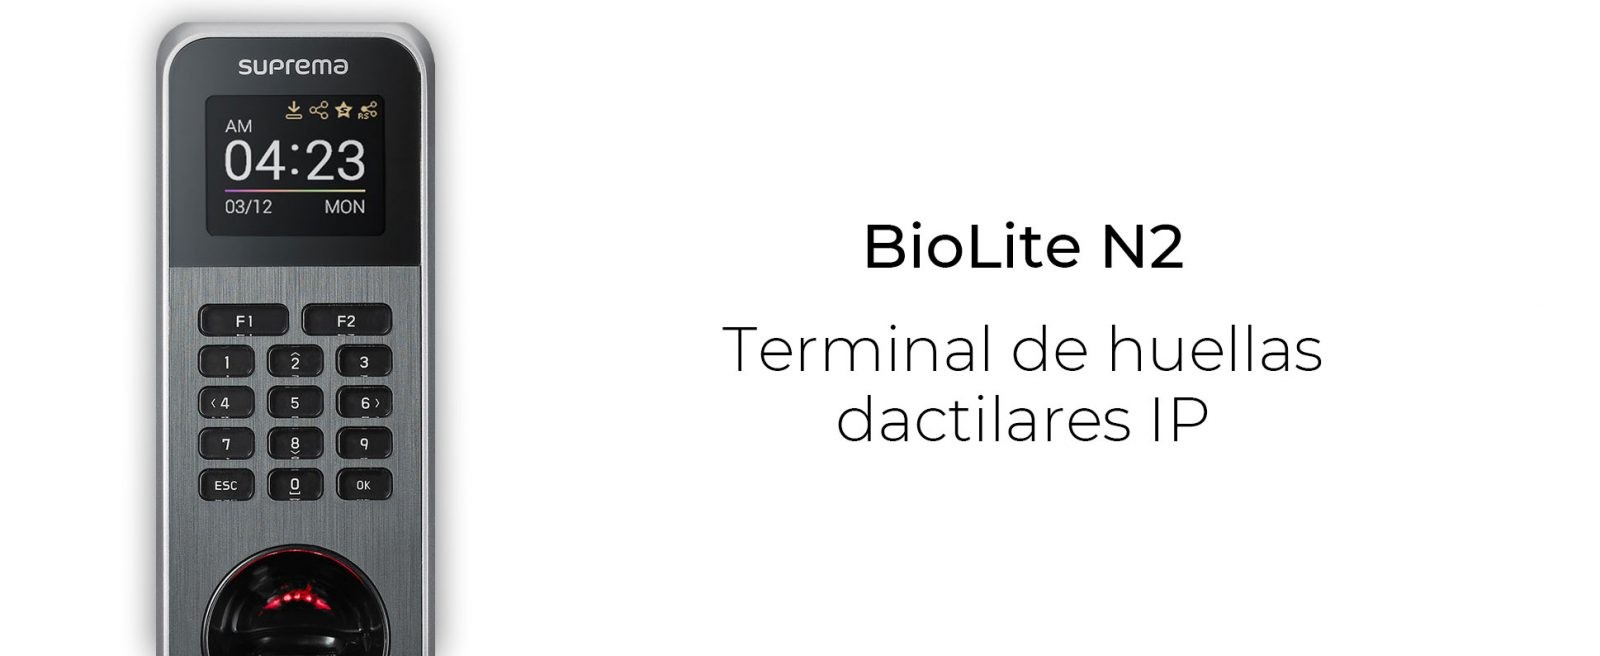 BioLite N2. Terminal de huellas dactilares IP. TestaTime. App de control horario desarrollada por AVA Soluciones Tecnológicas.